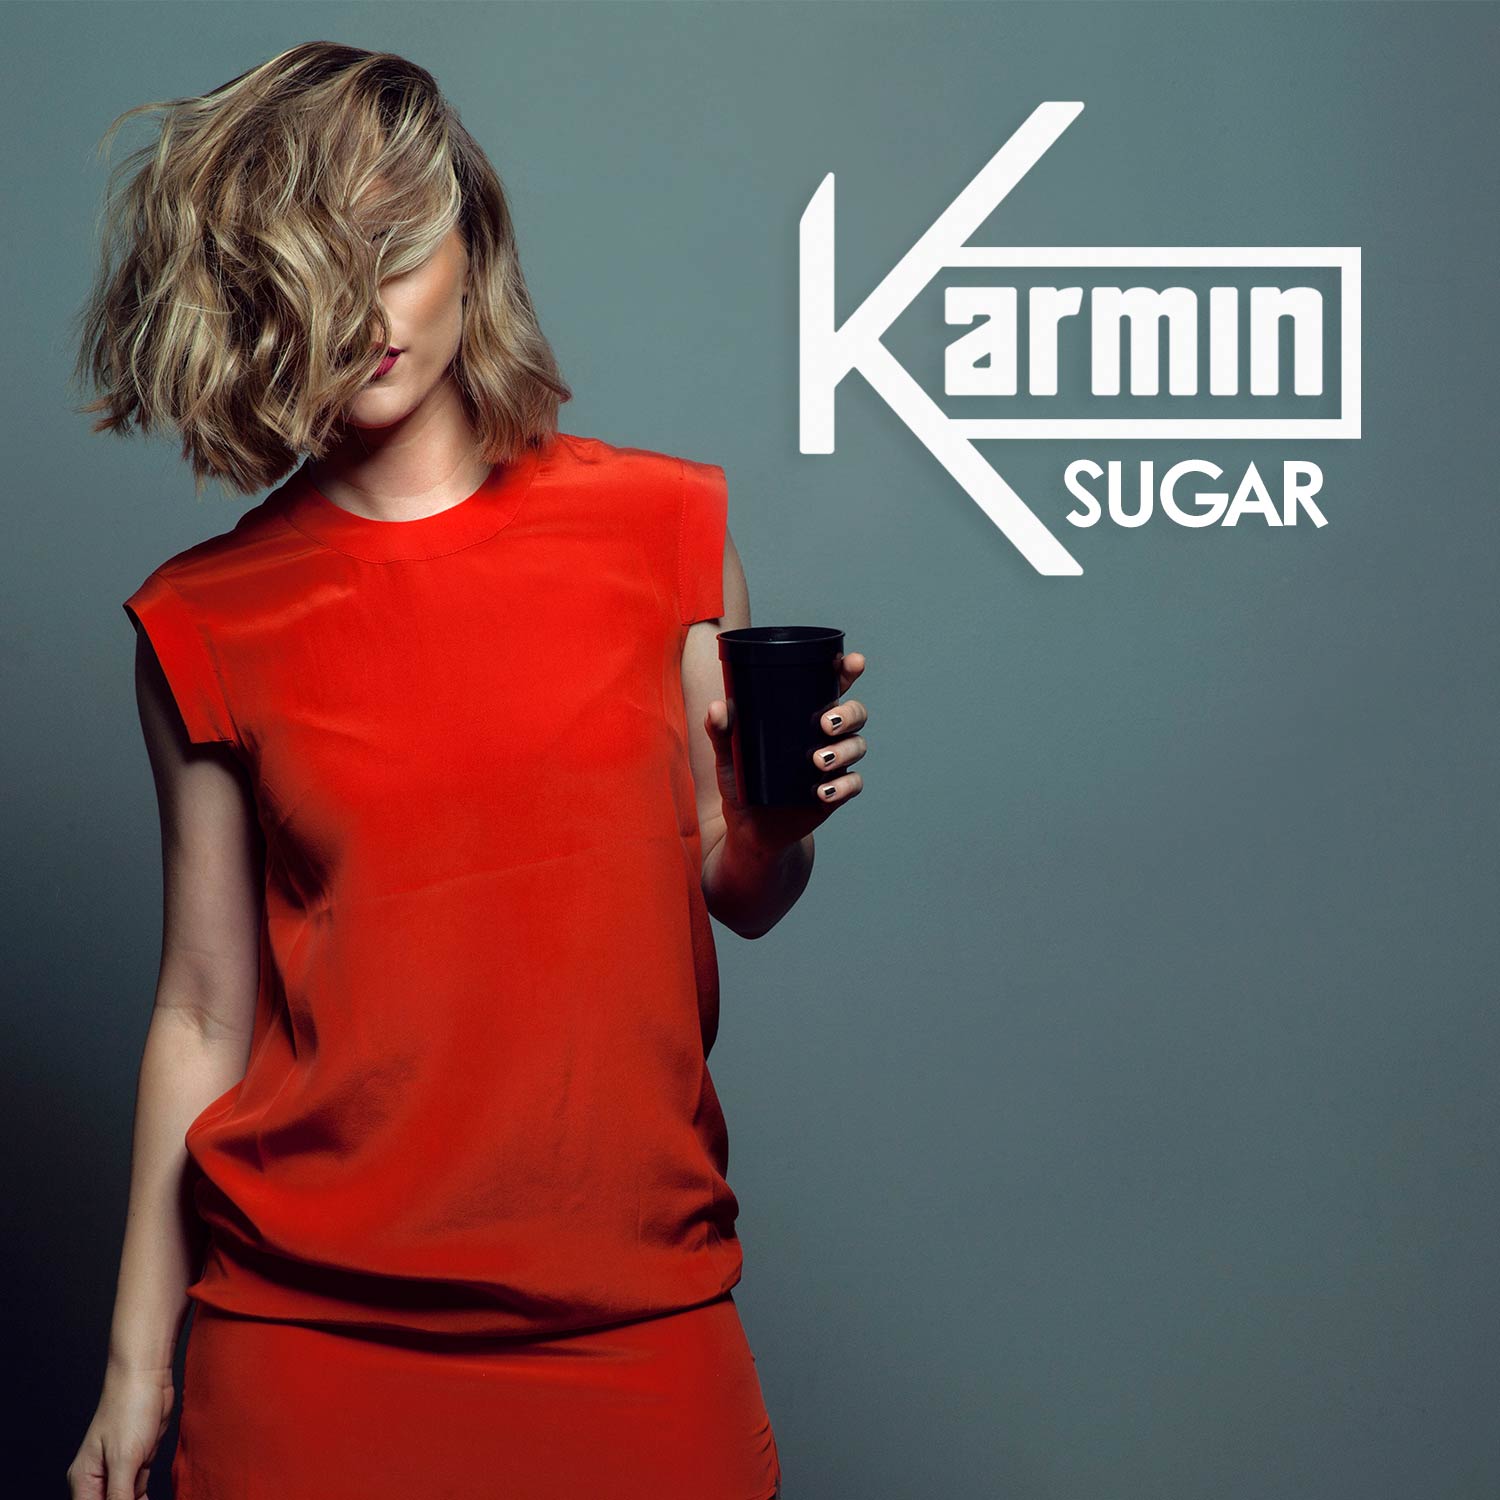 Karmin: Sugar, la portada de la canción